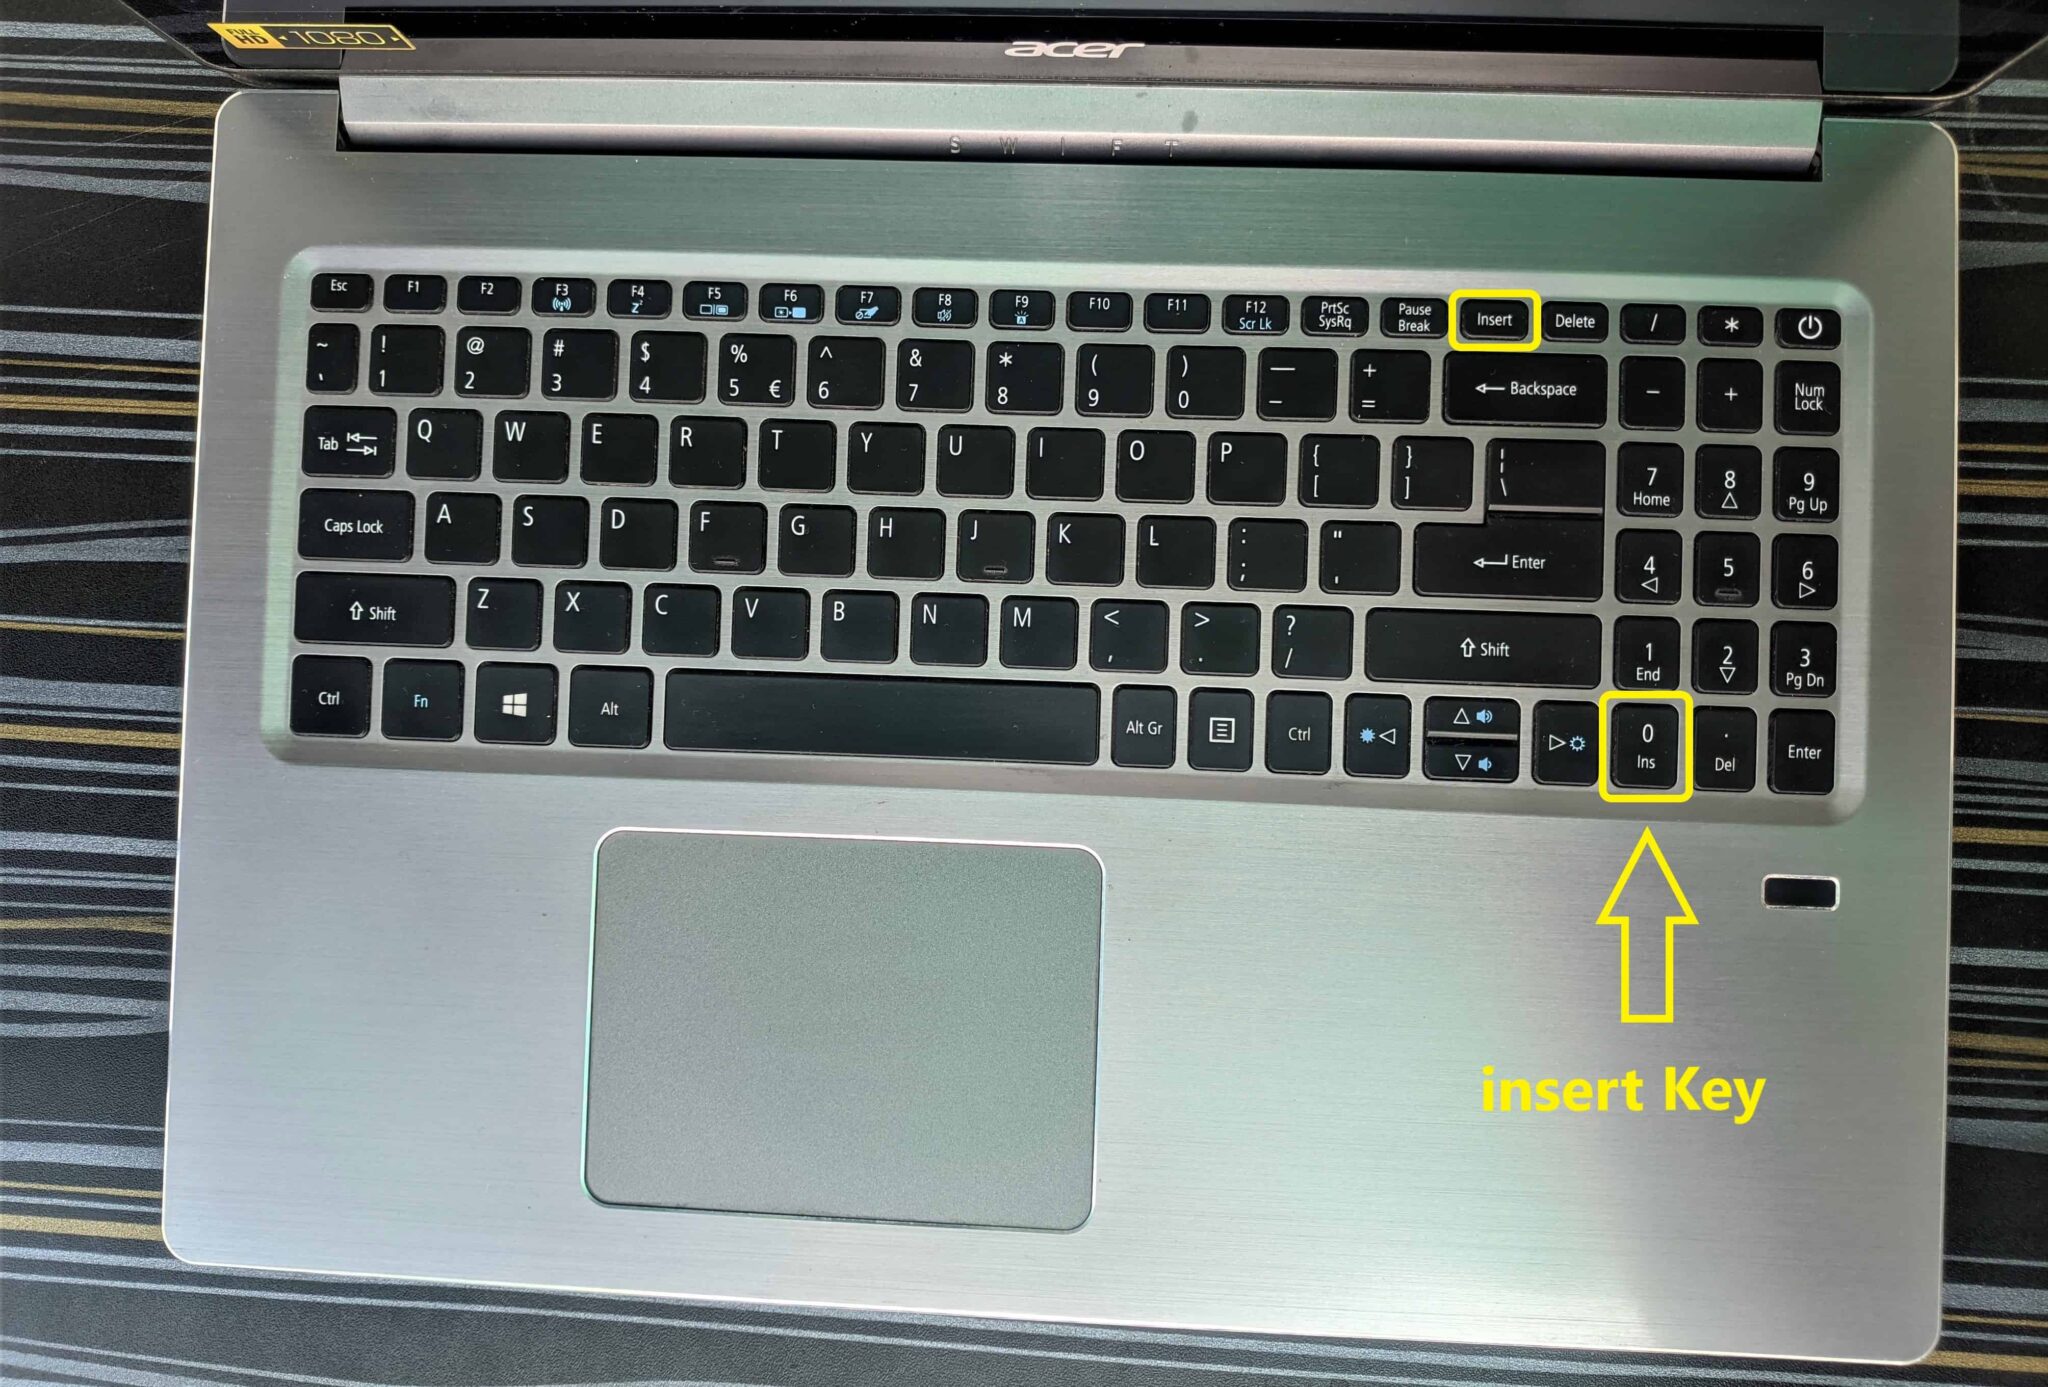 insert key on laptop-acer